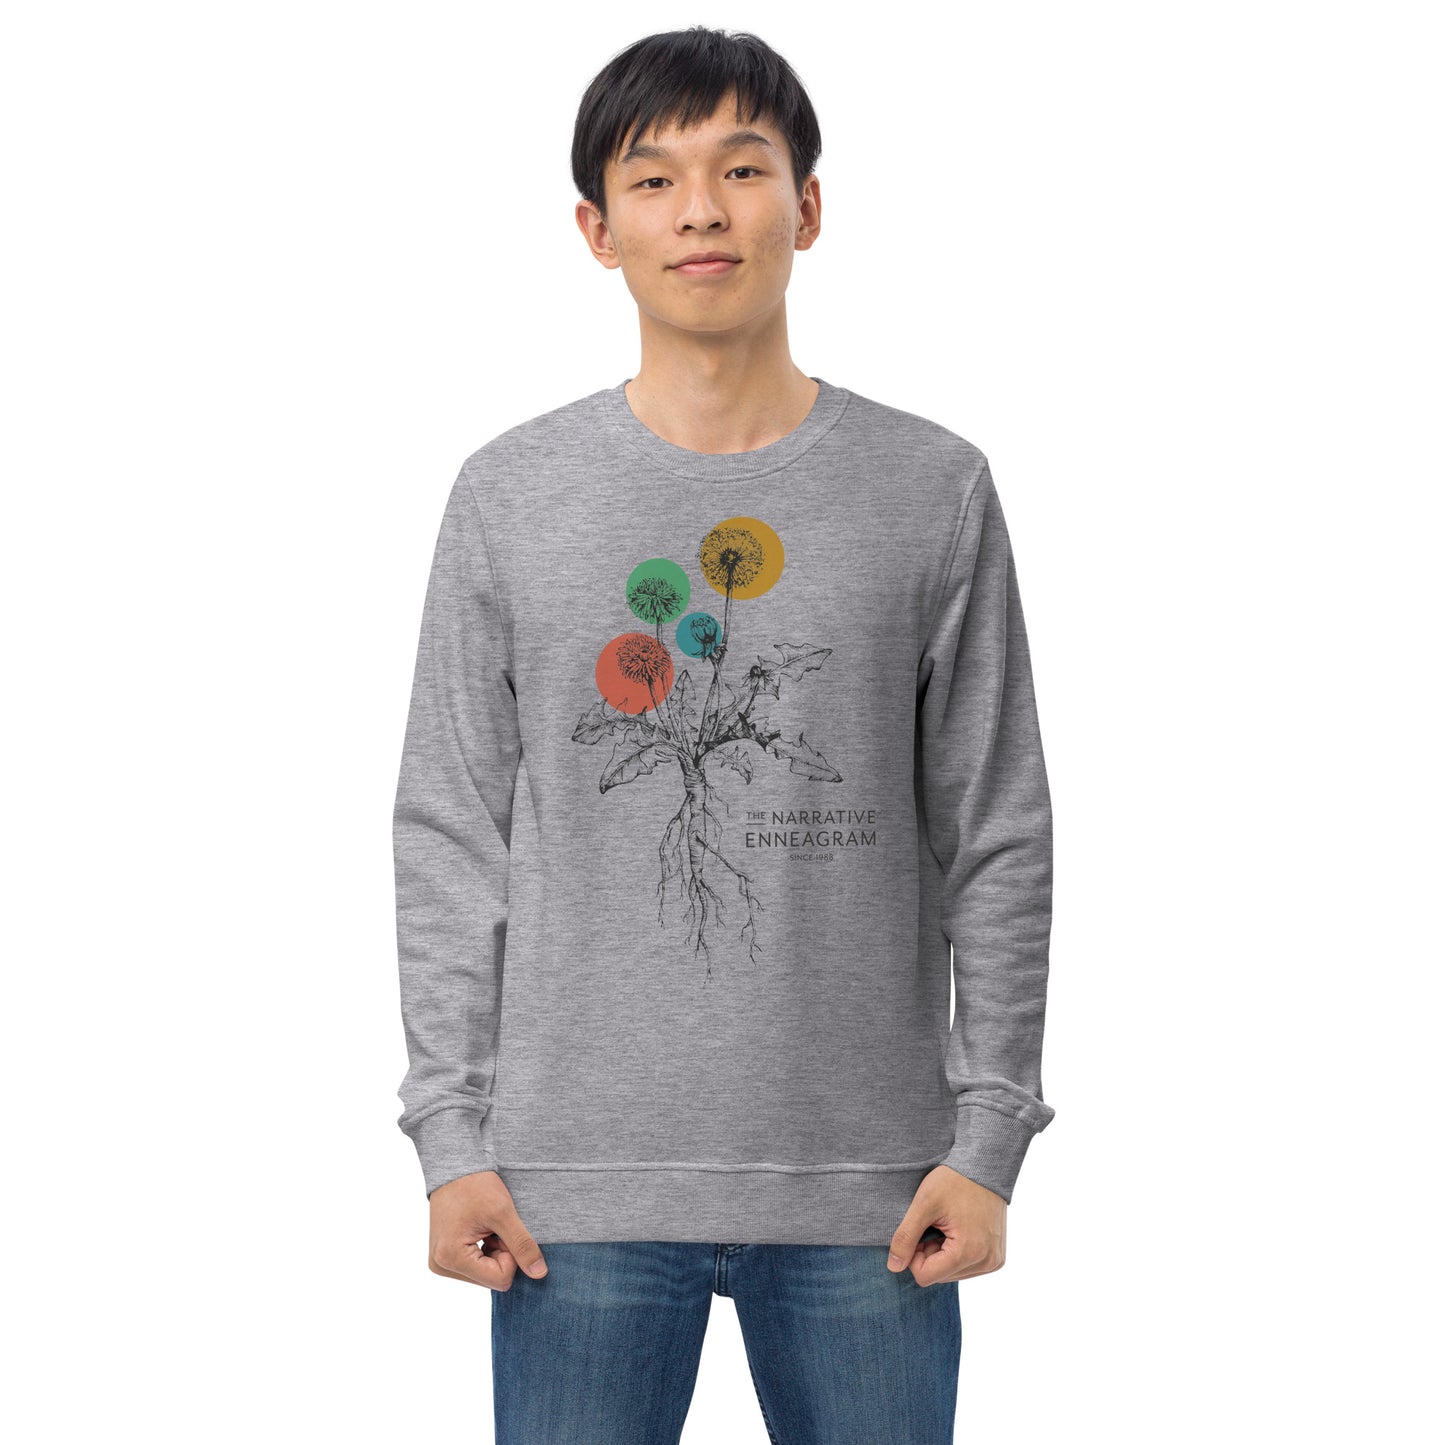 Dandelions Organic Sweatshirt